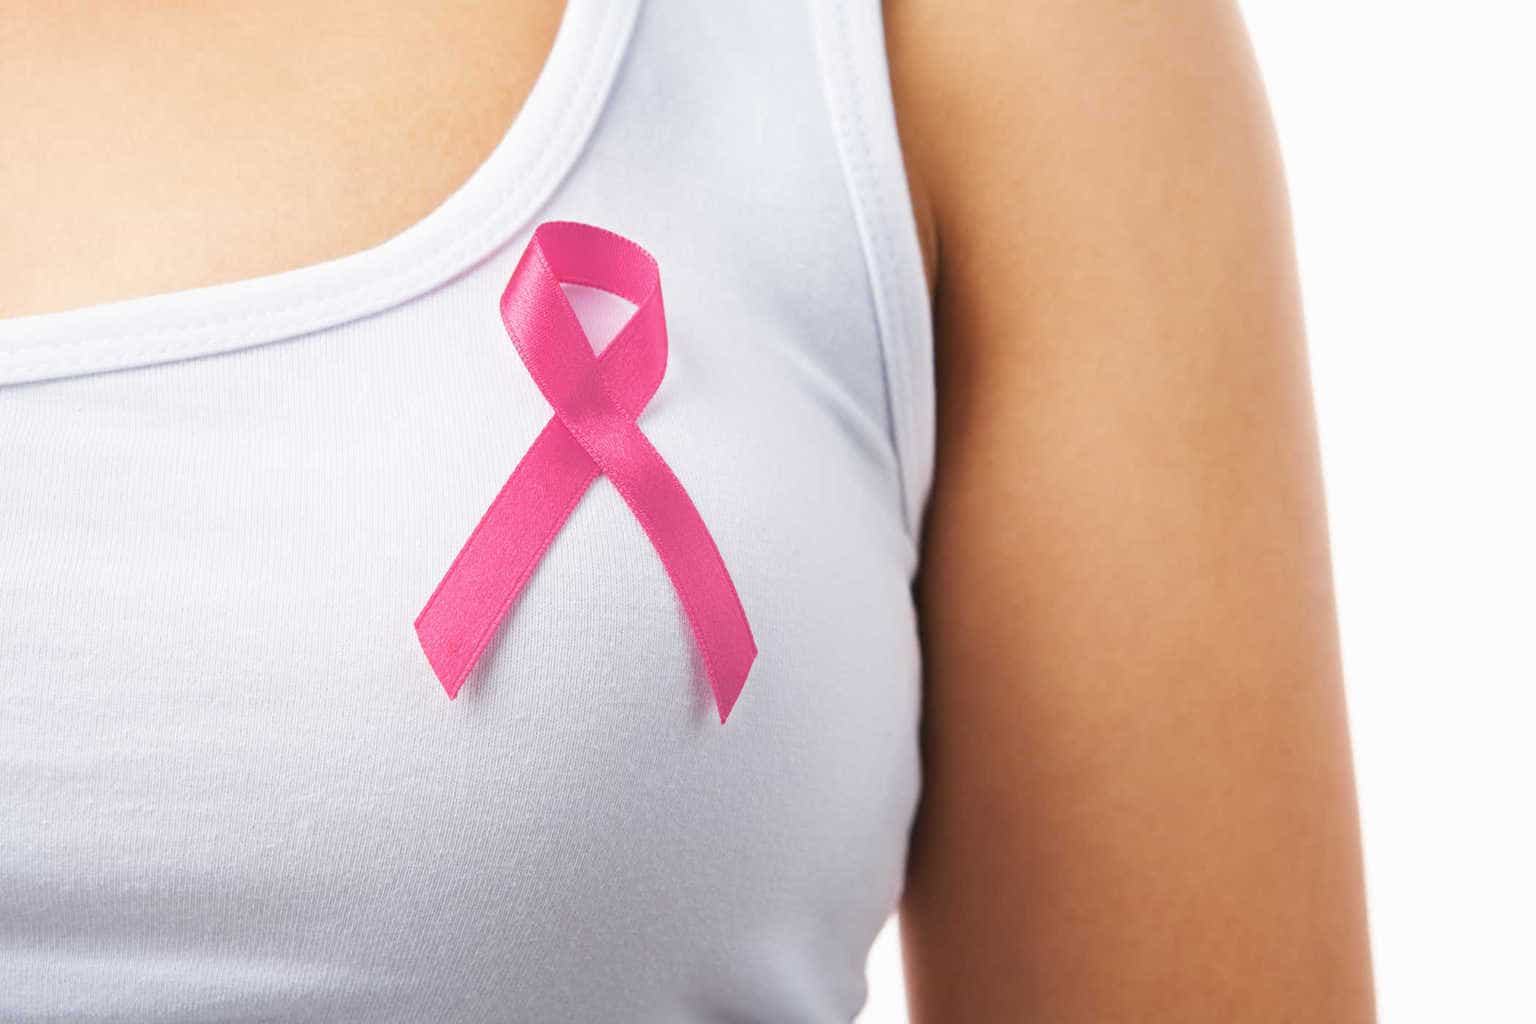 Ciri ciri kanker payudara stadium akhir